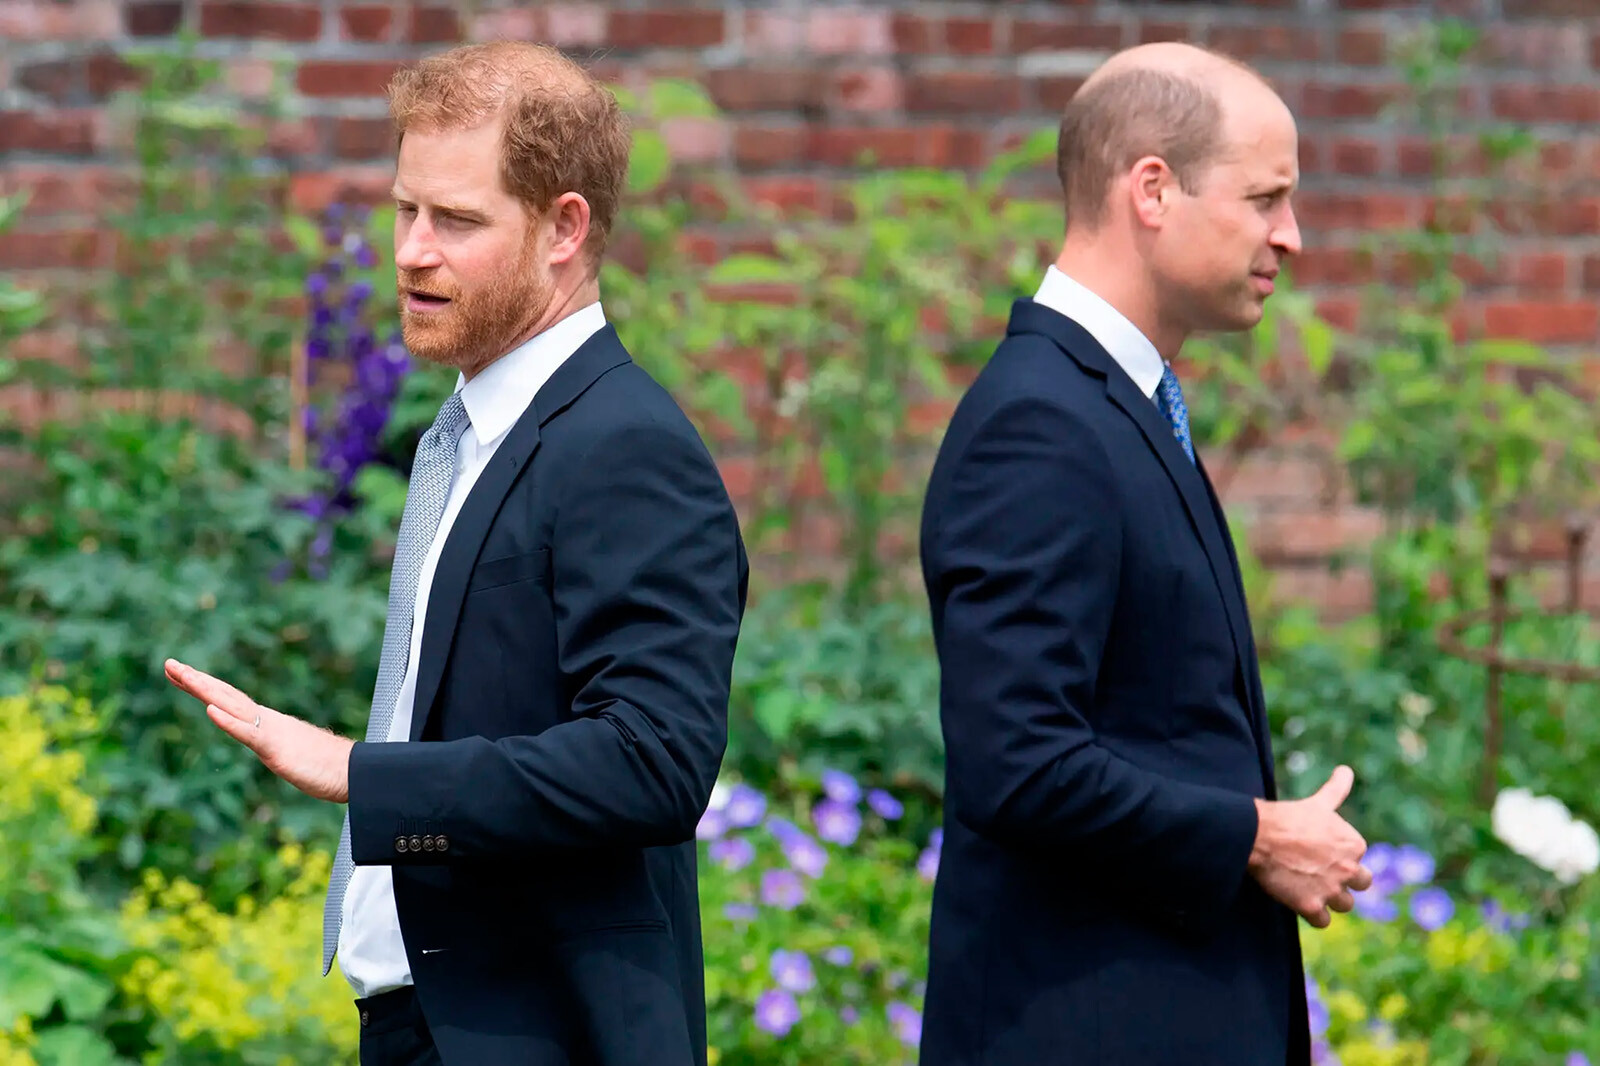 Гарри умолял принца Уильяма о примирении во время своего визита в Великобританию